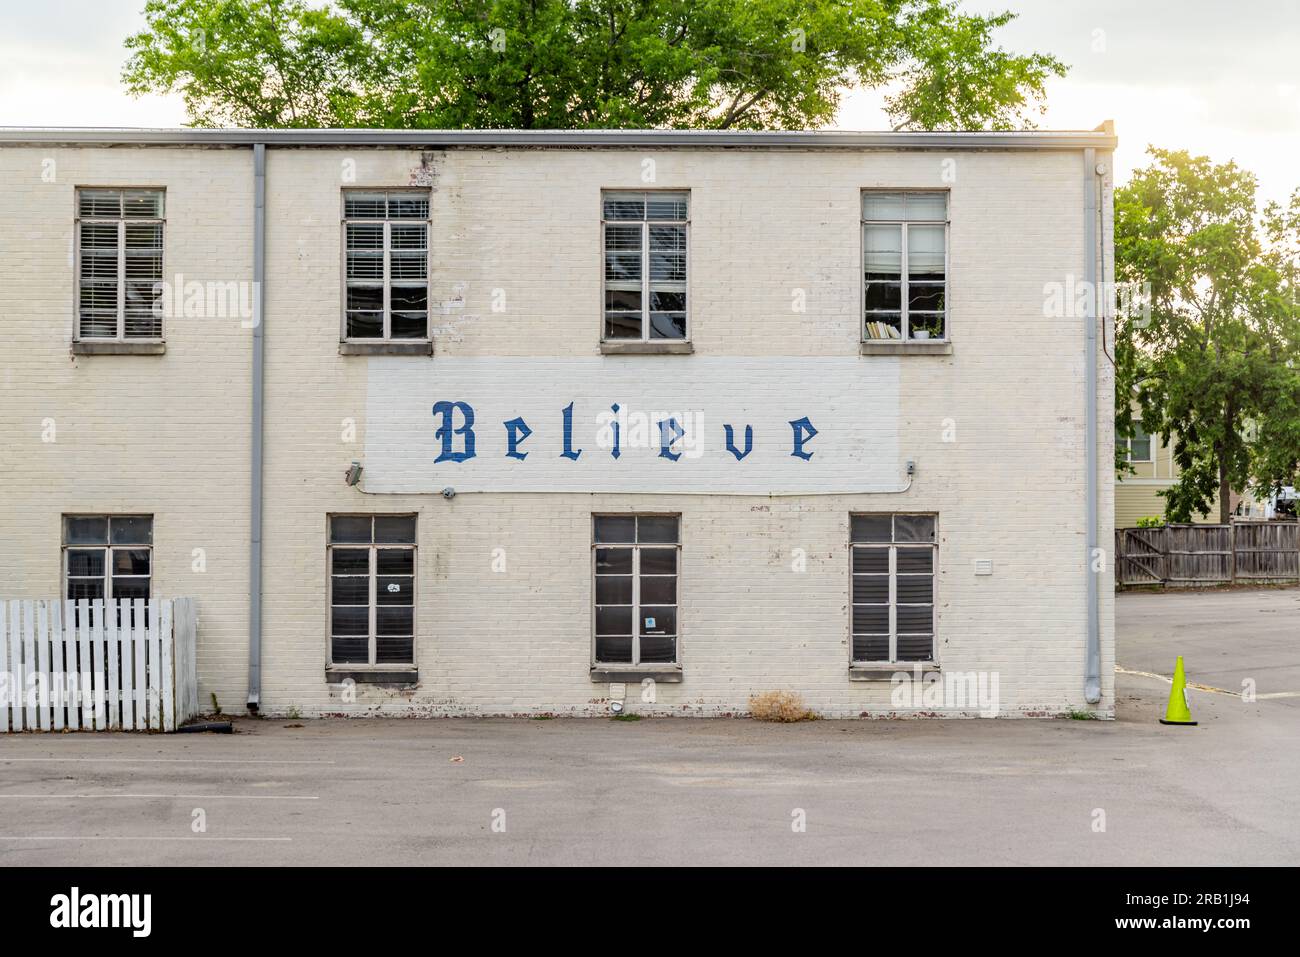 Das Wort "glauben" wurde an der Seite einer Midtown-Kirche in nashville, tennessee, gemalt Stockfoto